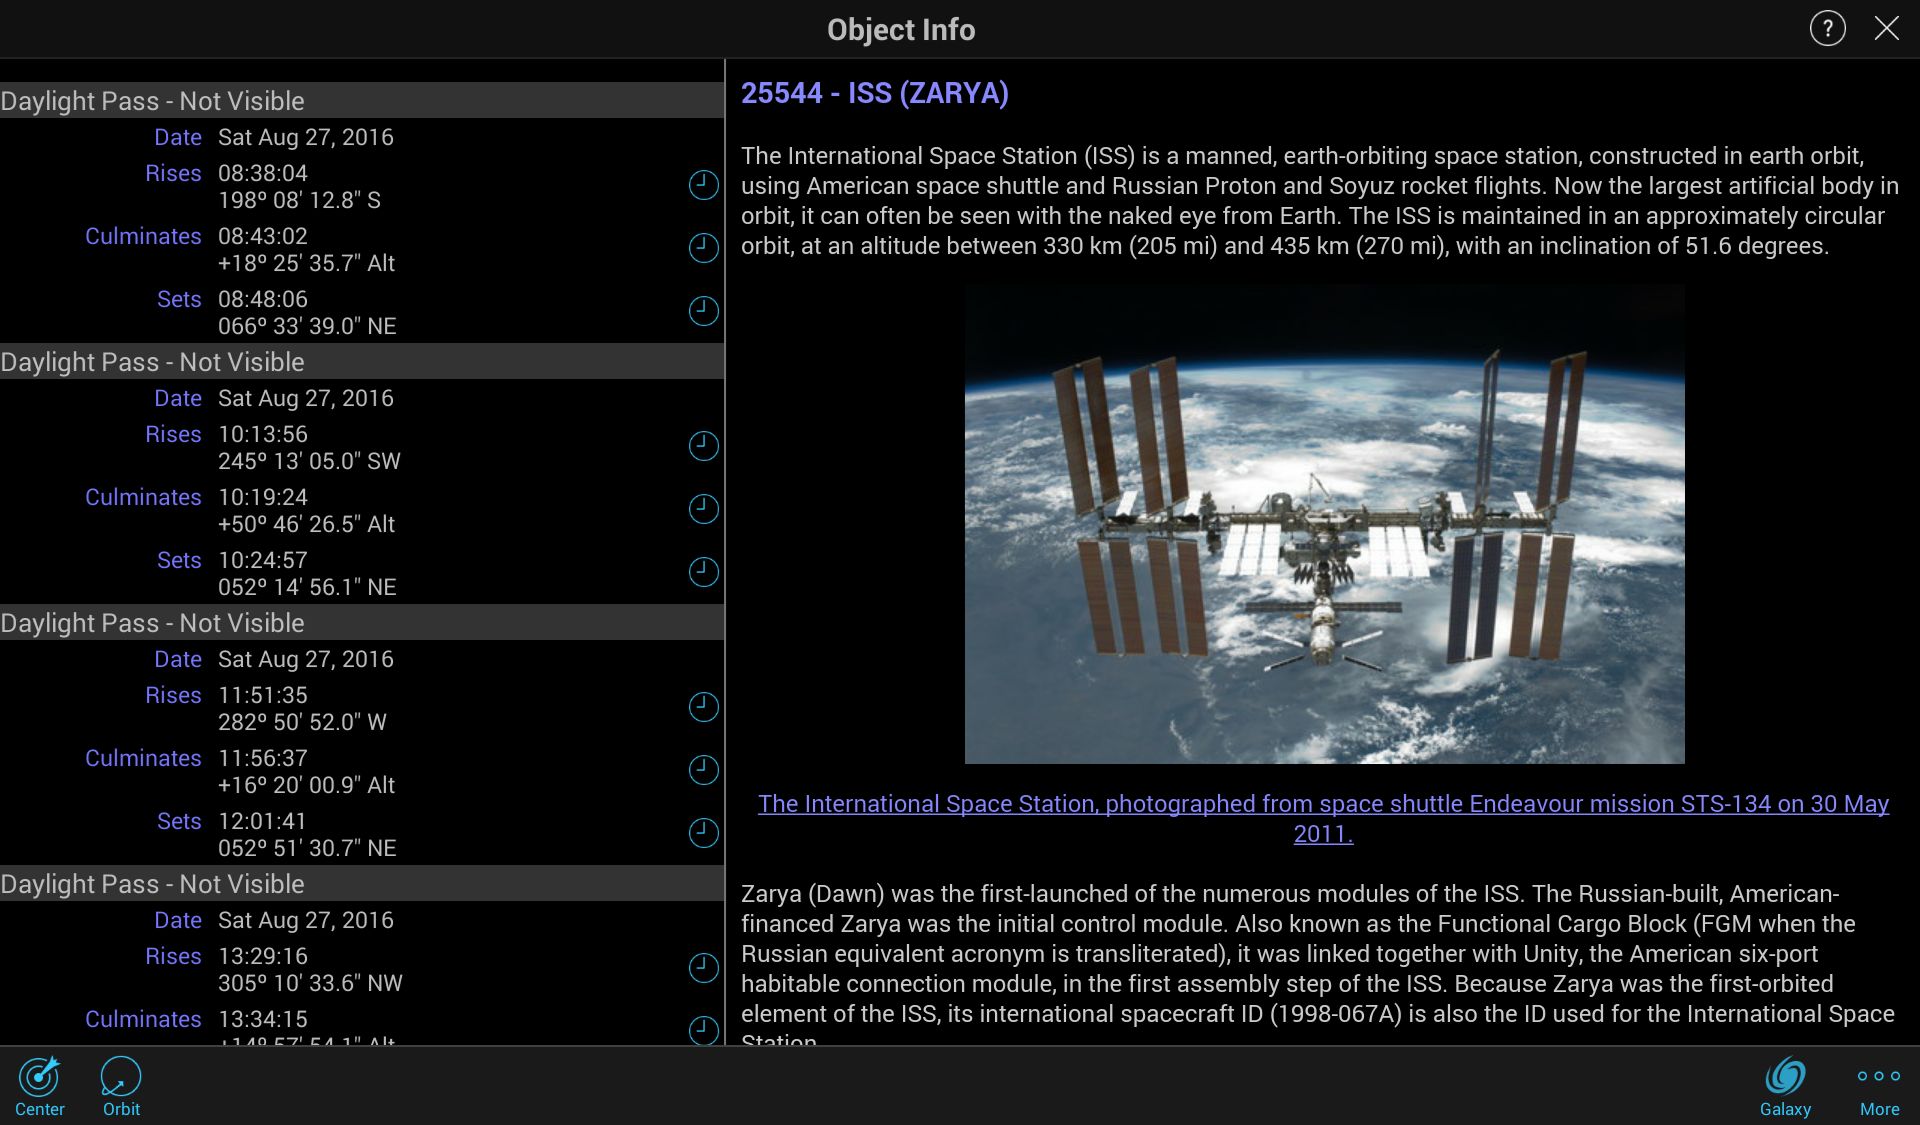 SkySafari 5, Aplikasi Penjelajah Langit Berbasis Mobile untuk Pencinta Astronomi